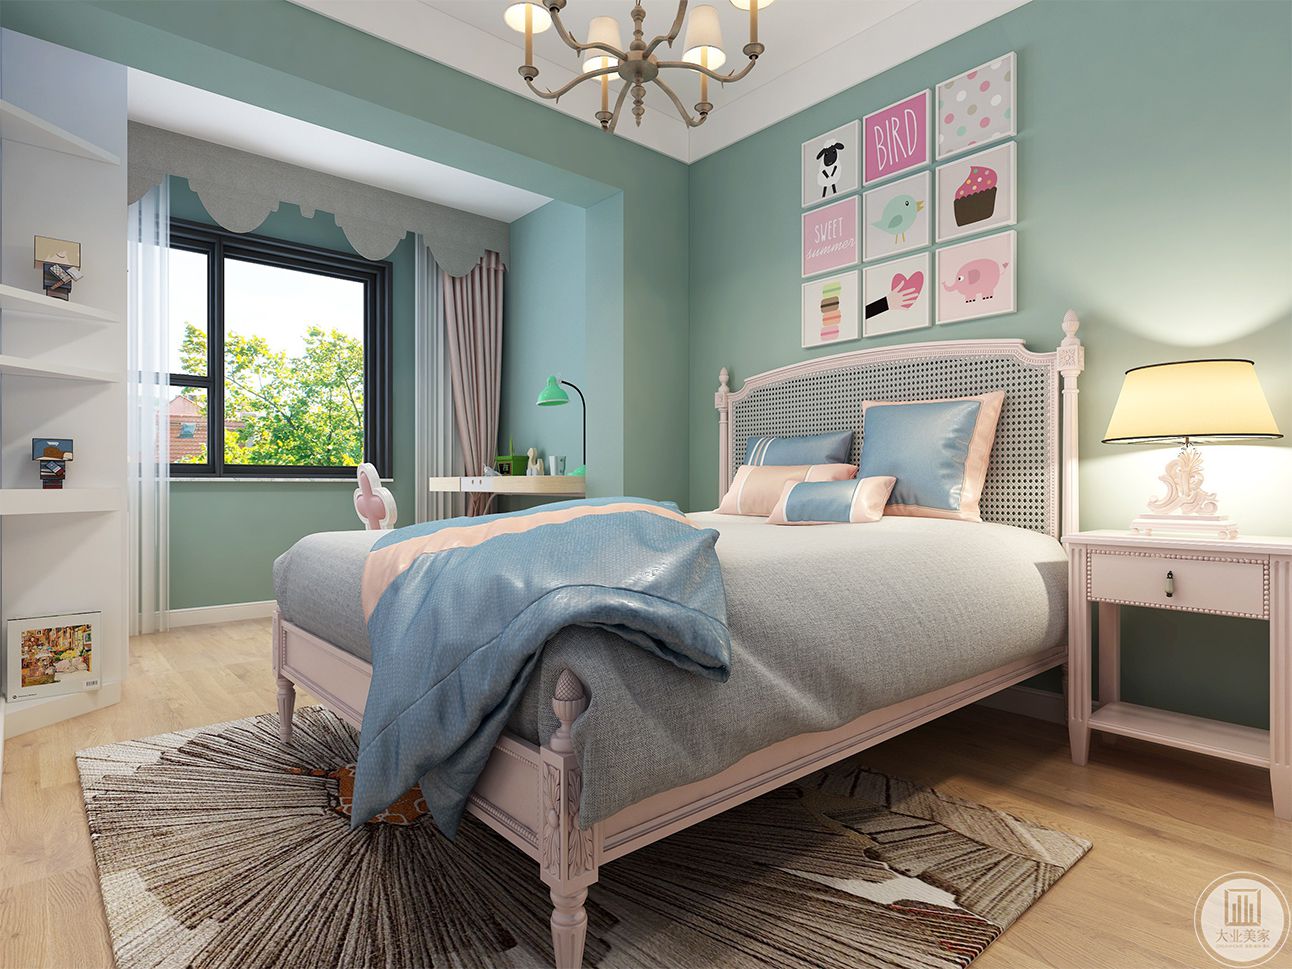 背景墙和主卧相同使用双色乳胶漆分色。灰色和蓝色很好的融合在一起，灰色的窗帘和乳白色的床具相呼应，精致的床头灯和精致的吊顶共同营造了一个优雅清新的休息空间。